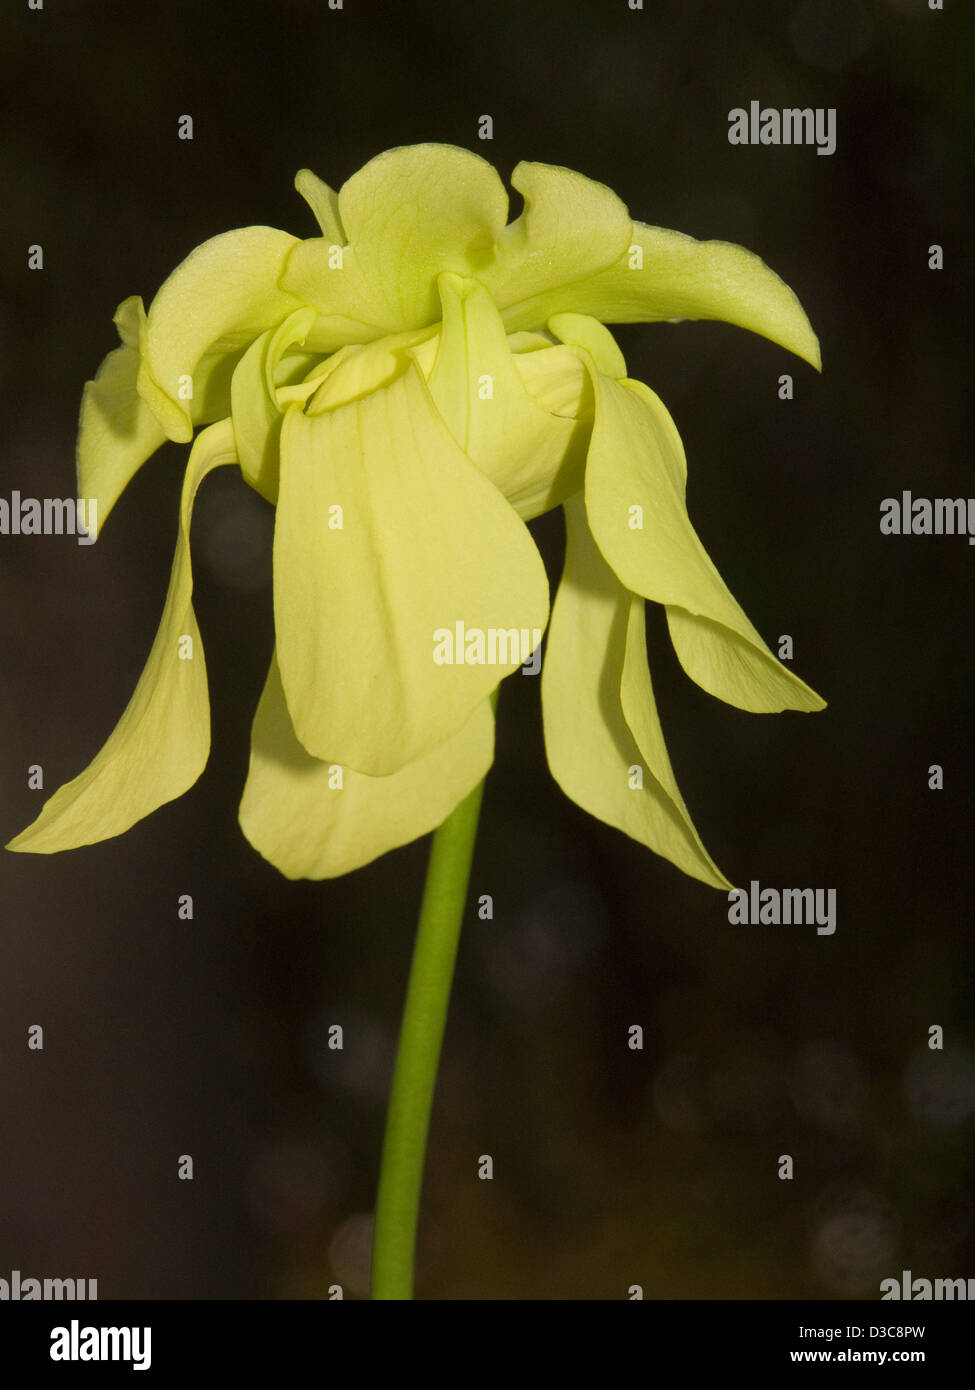 Belle et unique vert / jaune fleur de plante carnivore sarracénie, Sarracenia alata, sur un fond sombre Banque D'Images